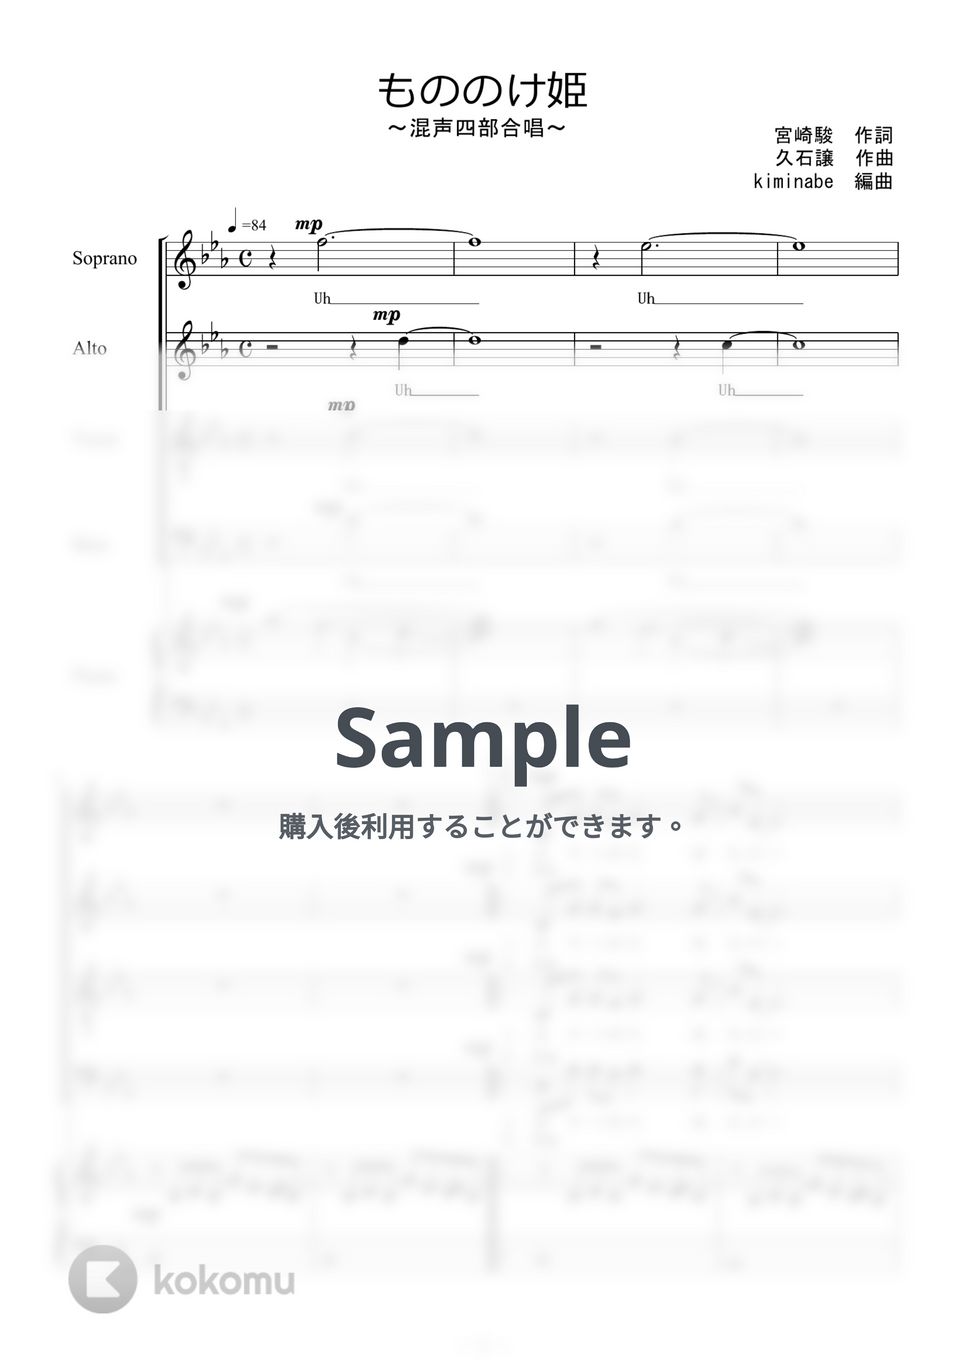 久石譲 - もののけ姫 (混声四部合唱) by kiminabe